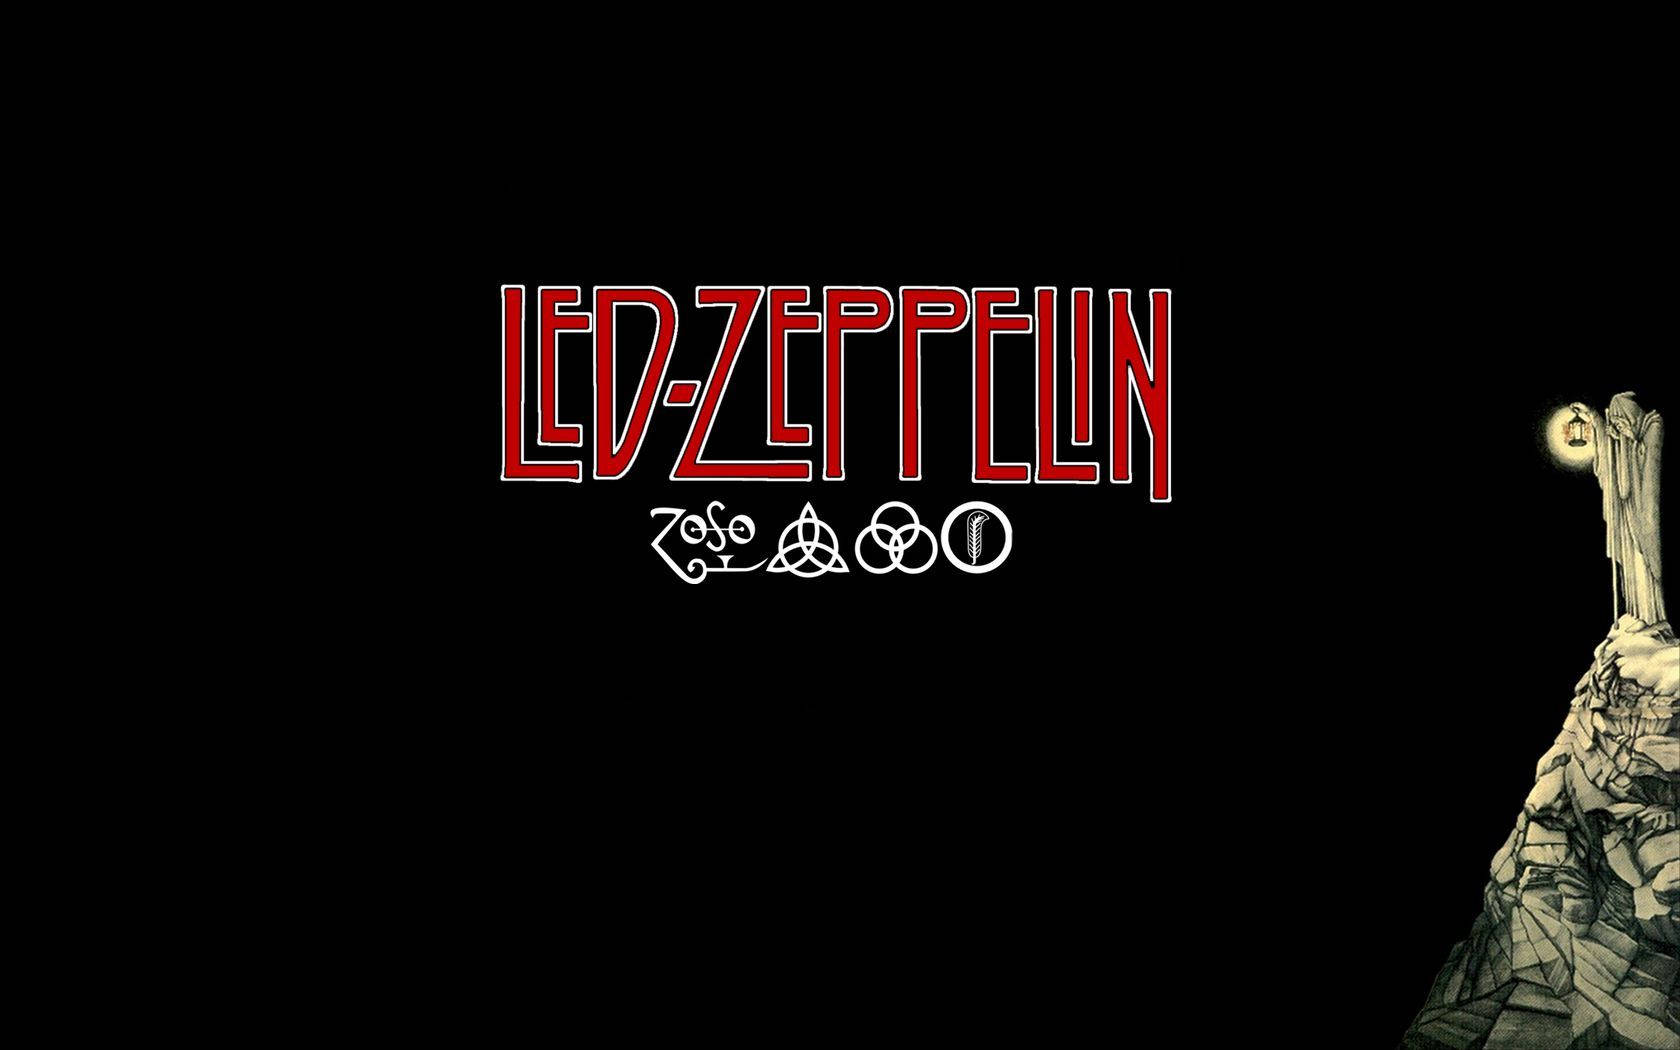 Led Zeppelin Album Cover Wallpaper